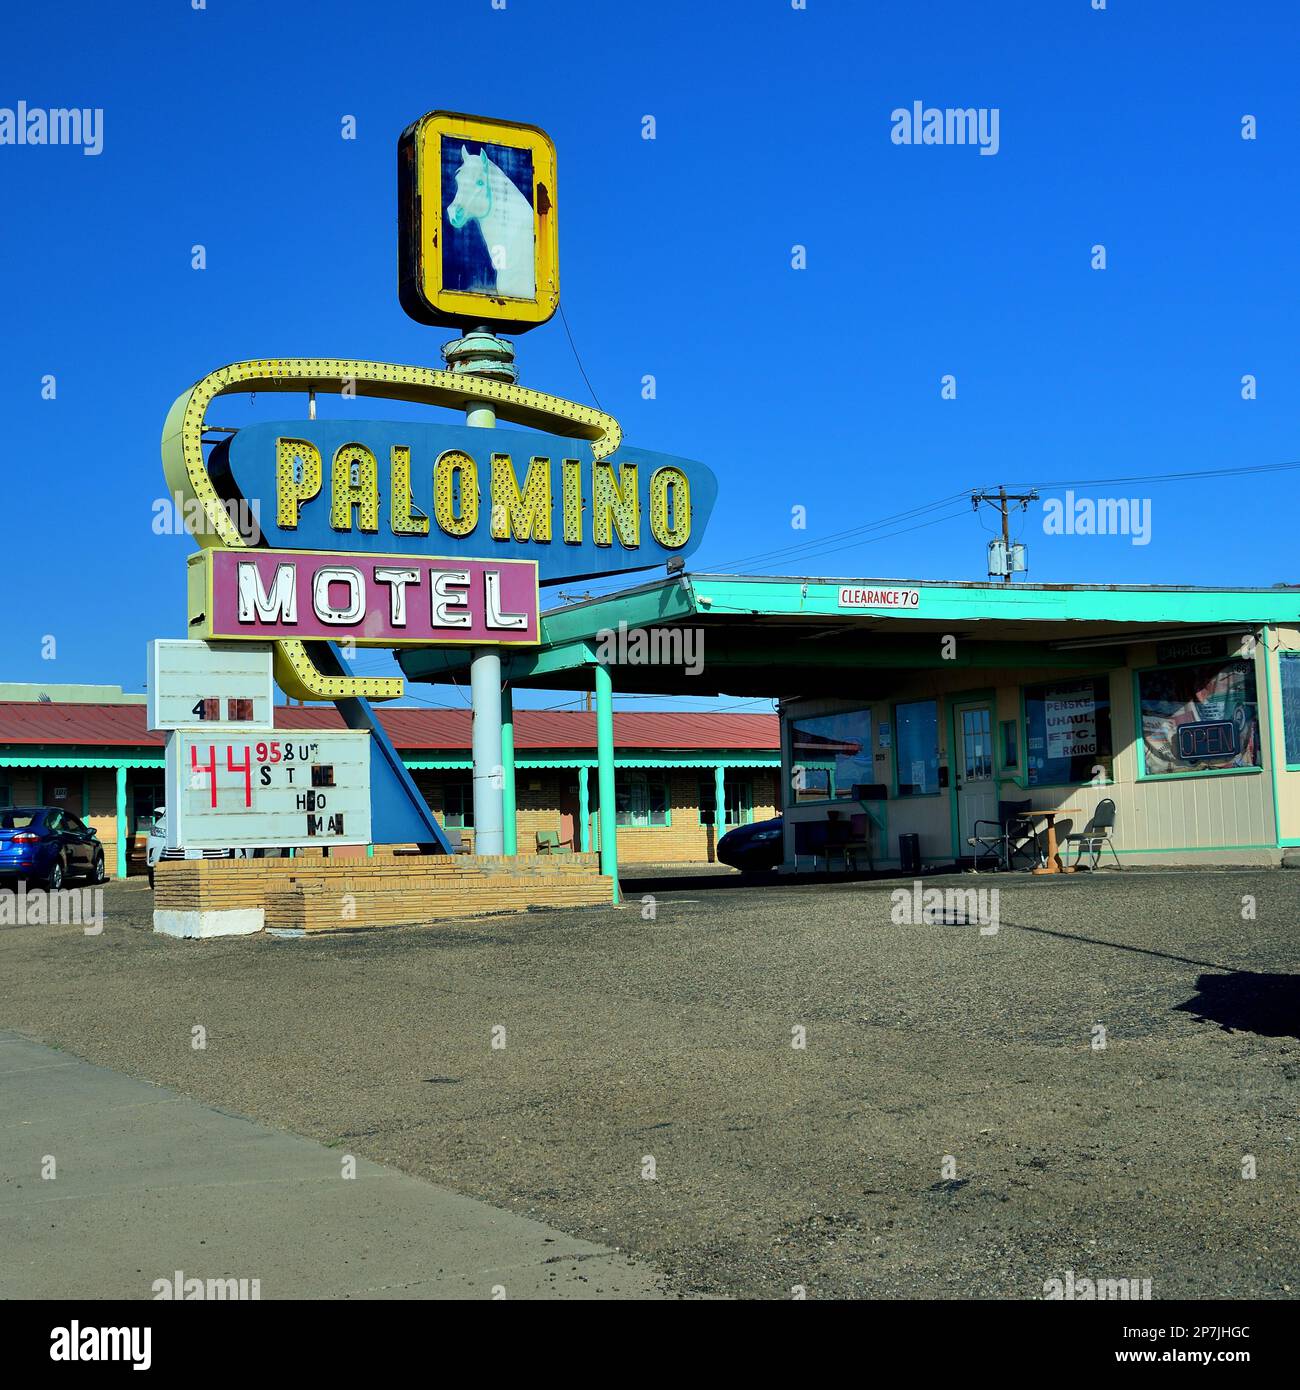 Palomino Motel, Tucumcari, New Mexico. Route 66 Travel. Stock Photo